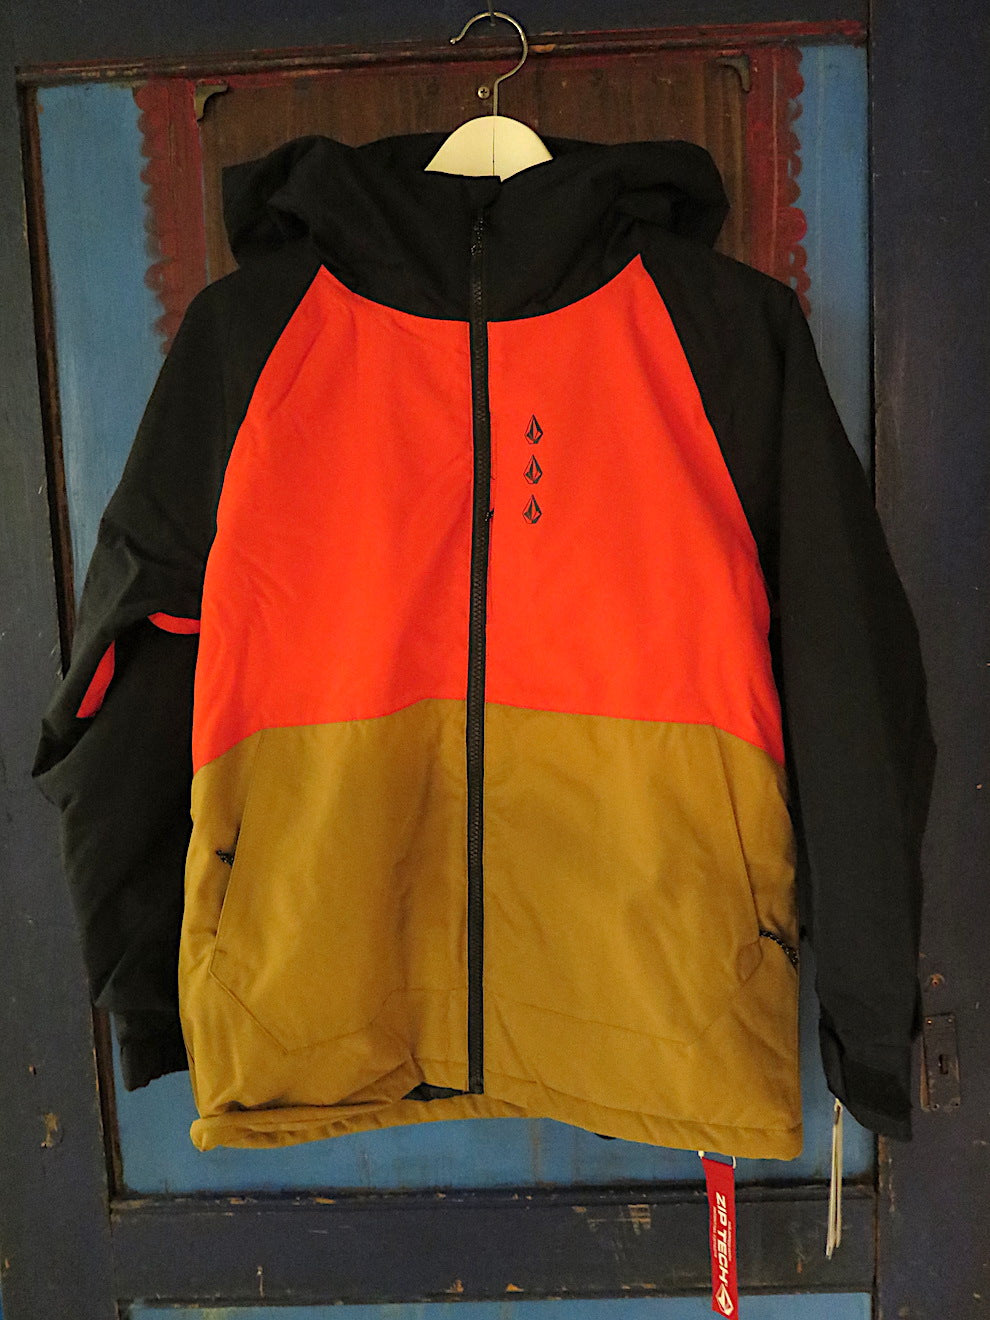 Volcom - Breck Ins Jacket - Black/Brown/Orange